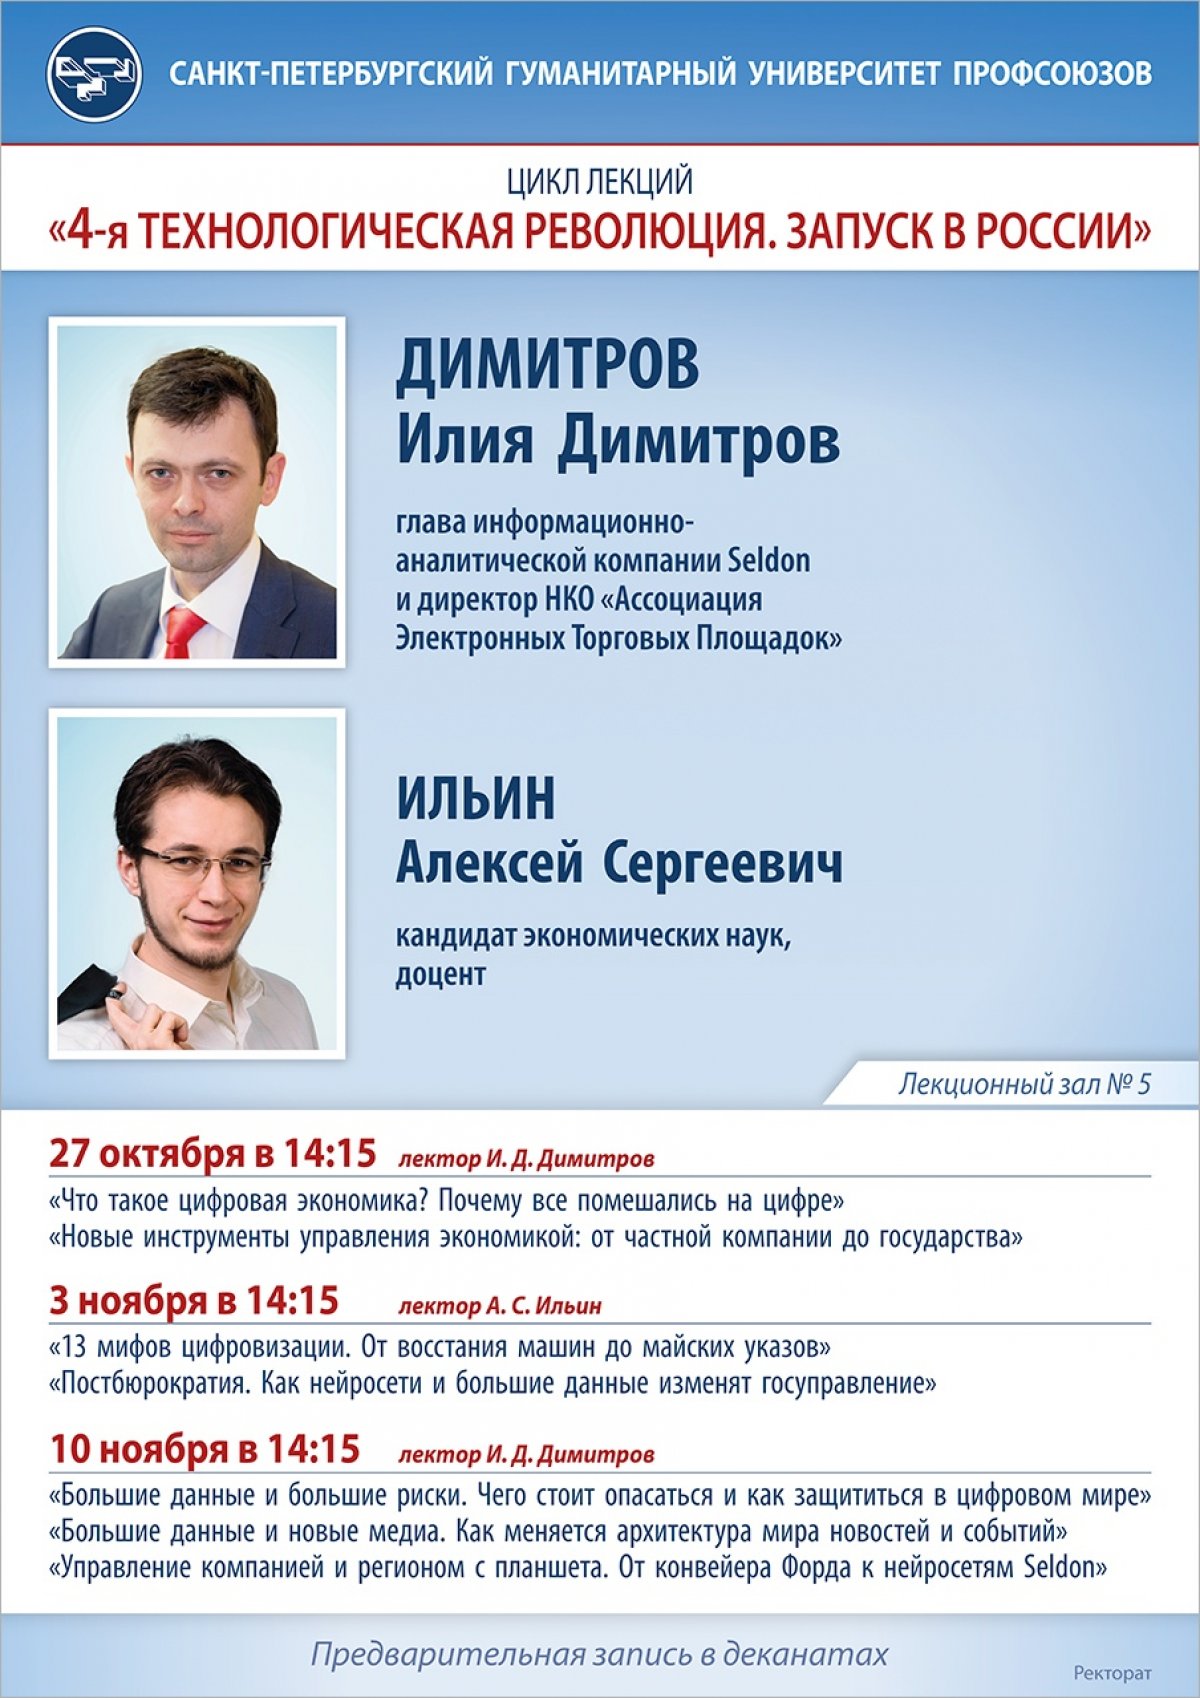 10 ноября в 14:15 в лекционном зале № 5 состоится выступление главы корпорации «SELDON» И.Д. Димитрова (Москва) о цифровой экономике